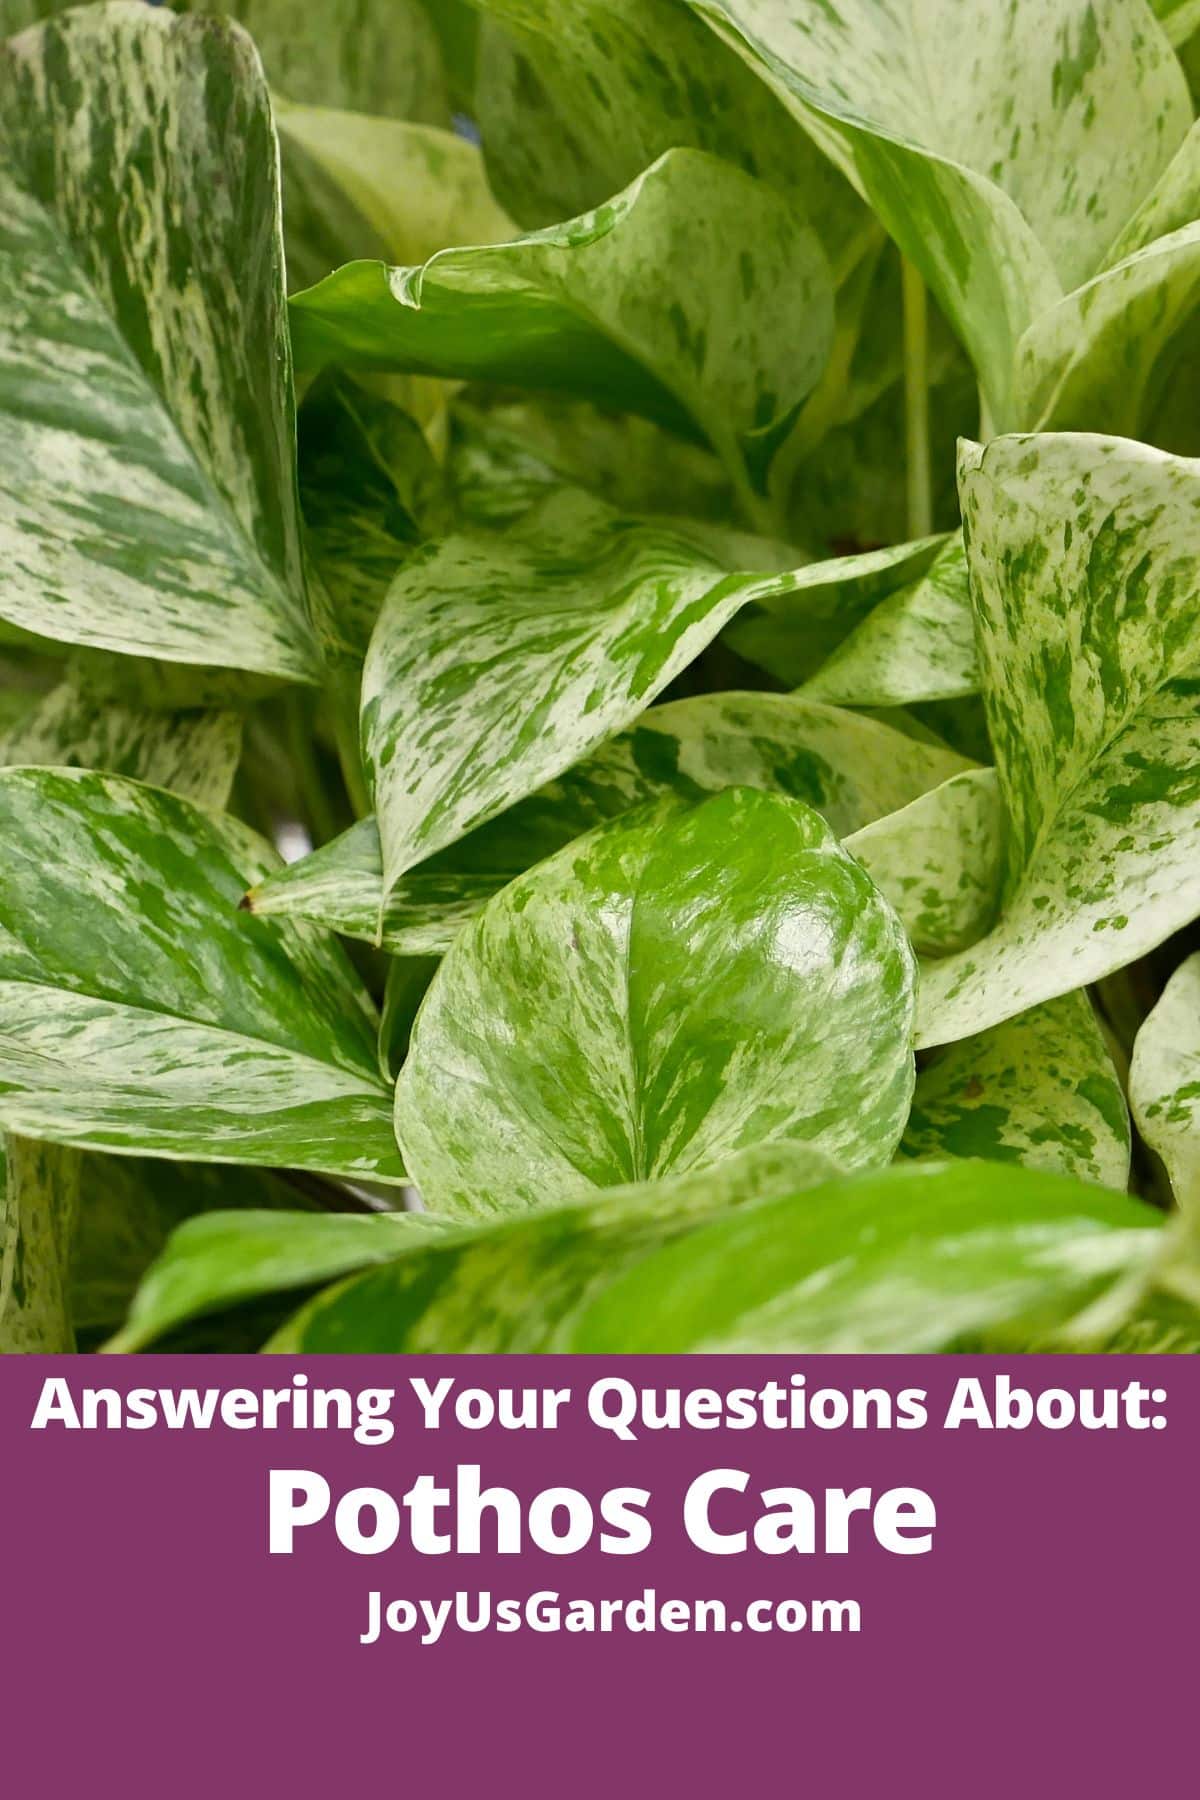  Vastamine teie küsimustele Pothos'i taimede kohta